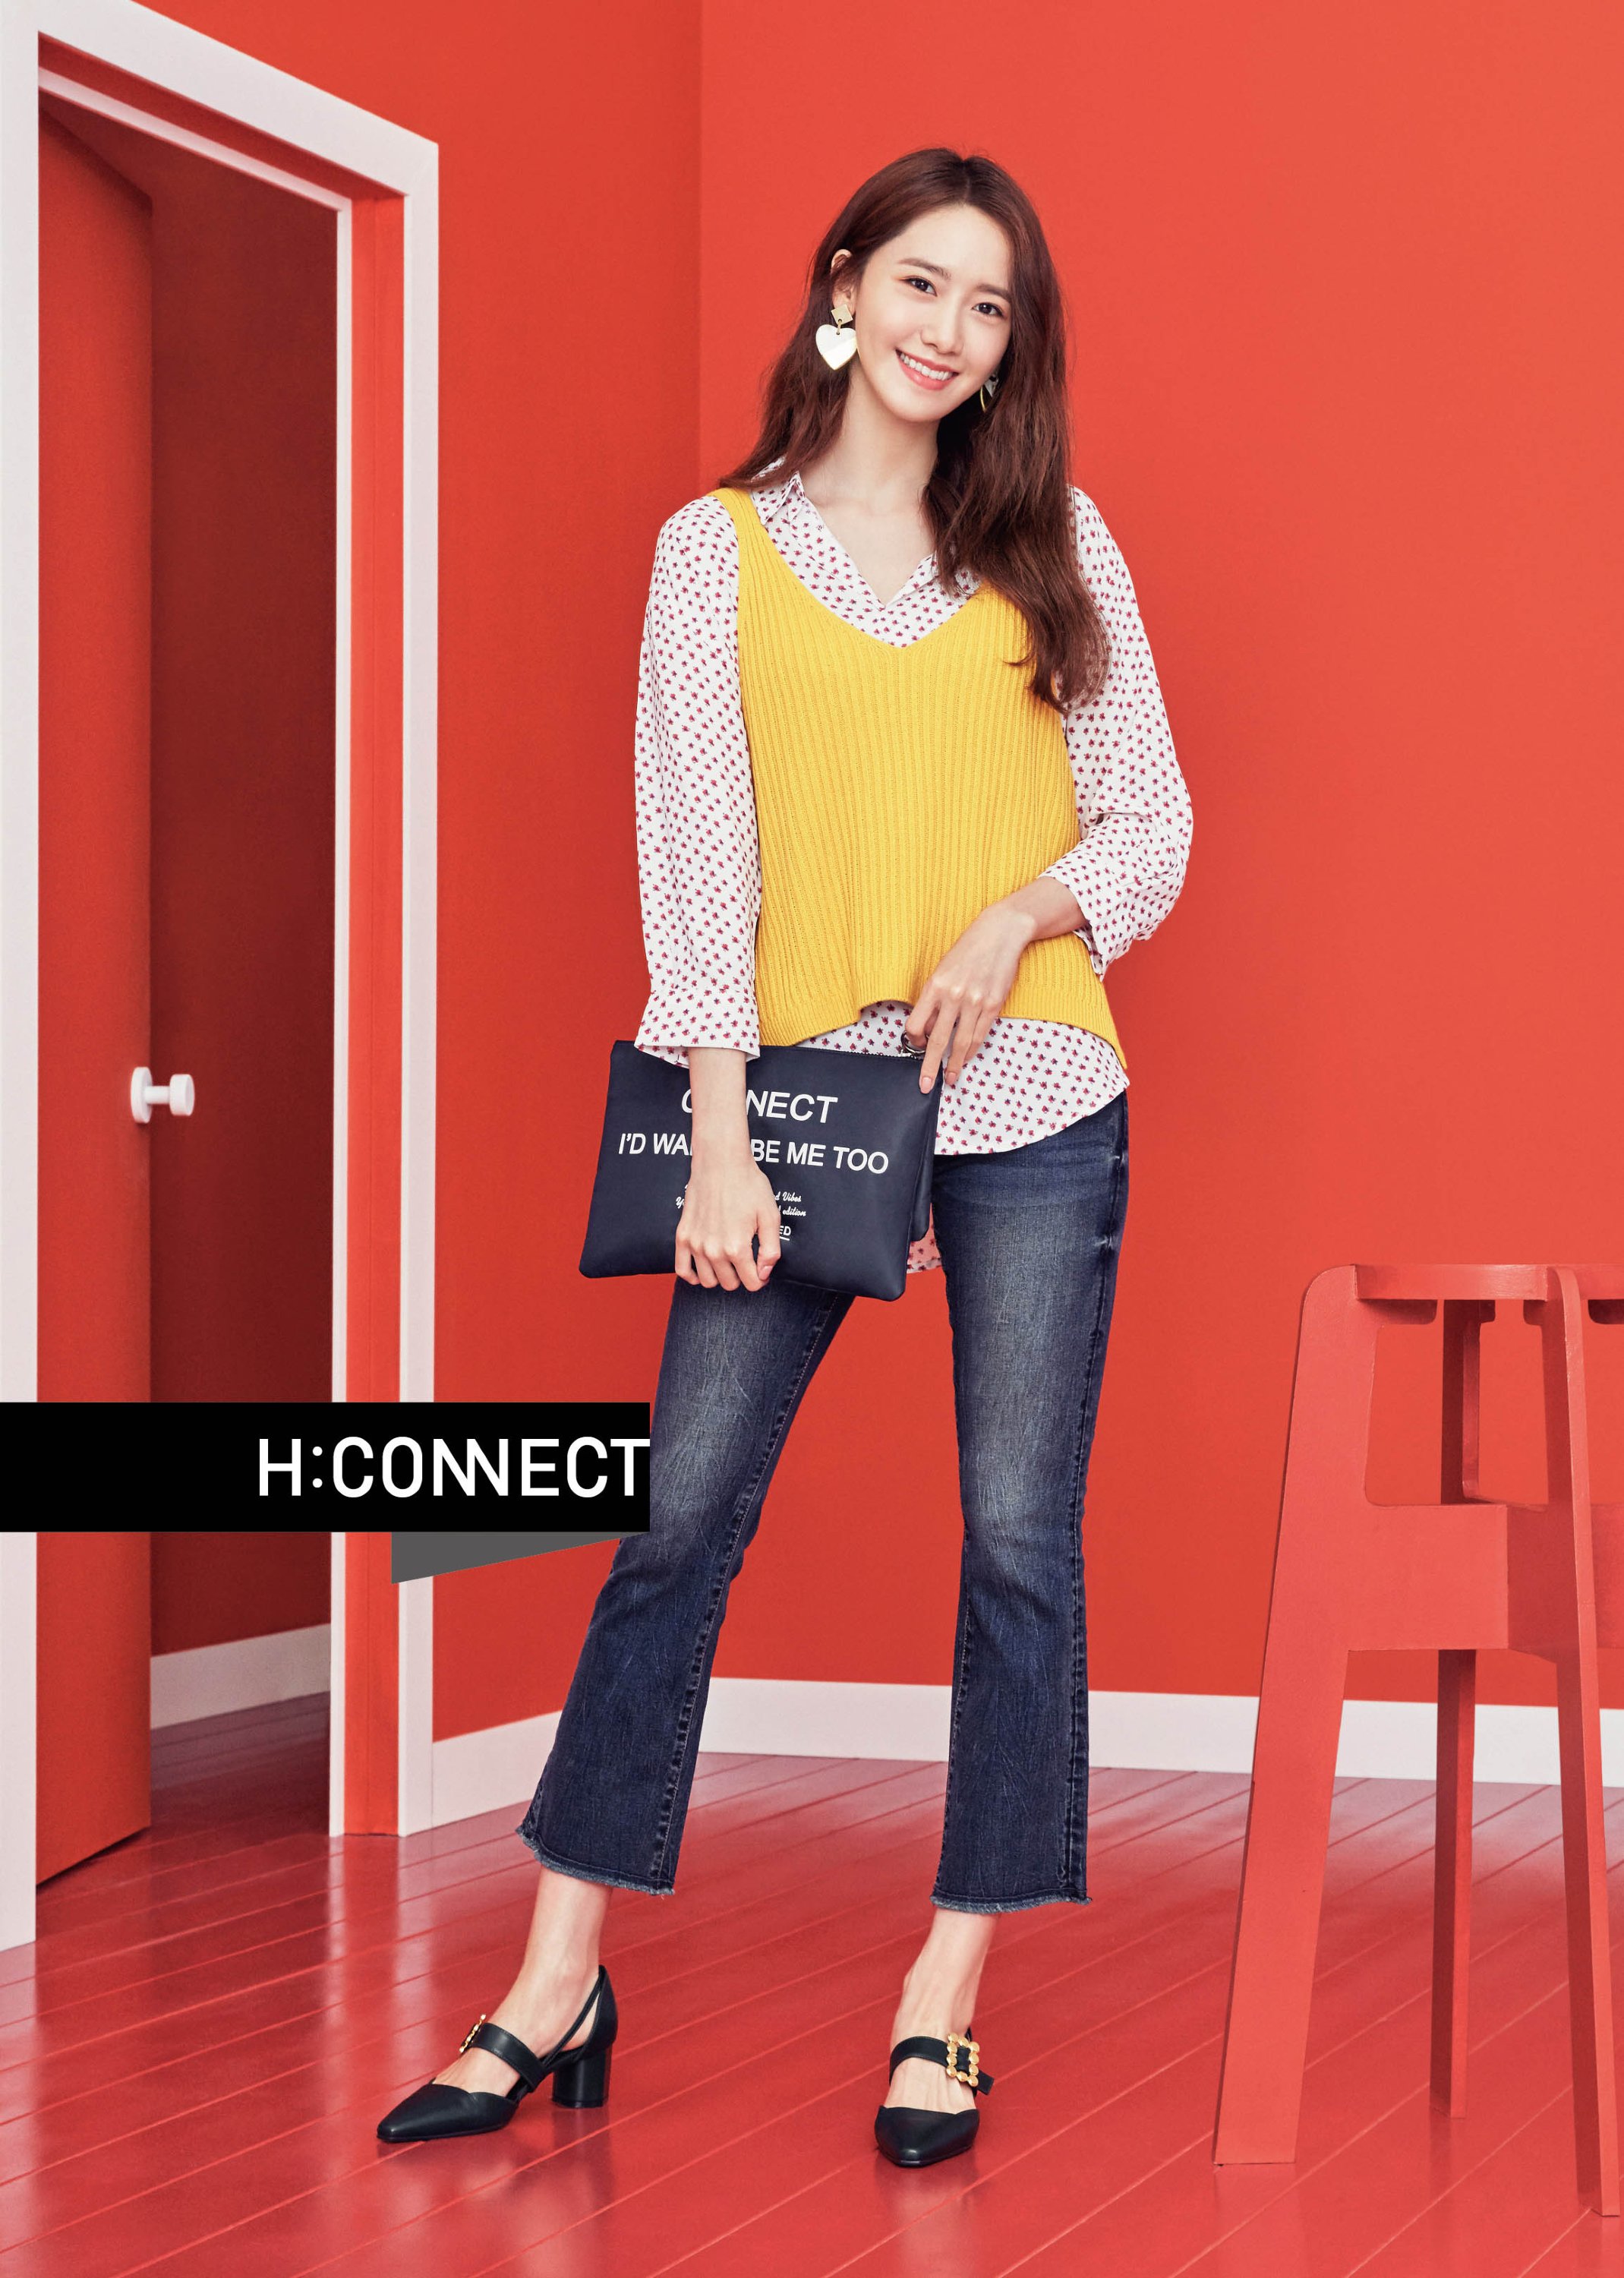 [OTHER][27-07-2015]YoonA trở thành người mẫu mới cho dòng thời trang "H:CONNECT" - Page 7 MXRaJwvEEa-3000x3000